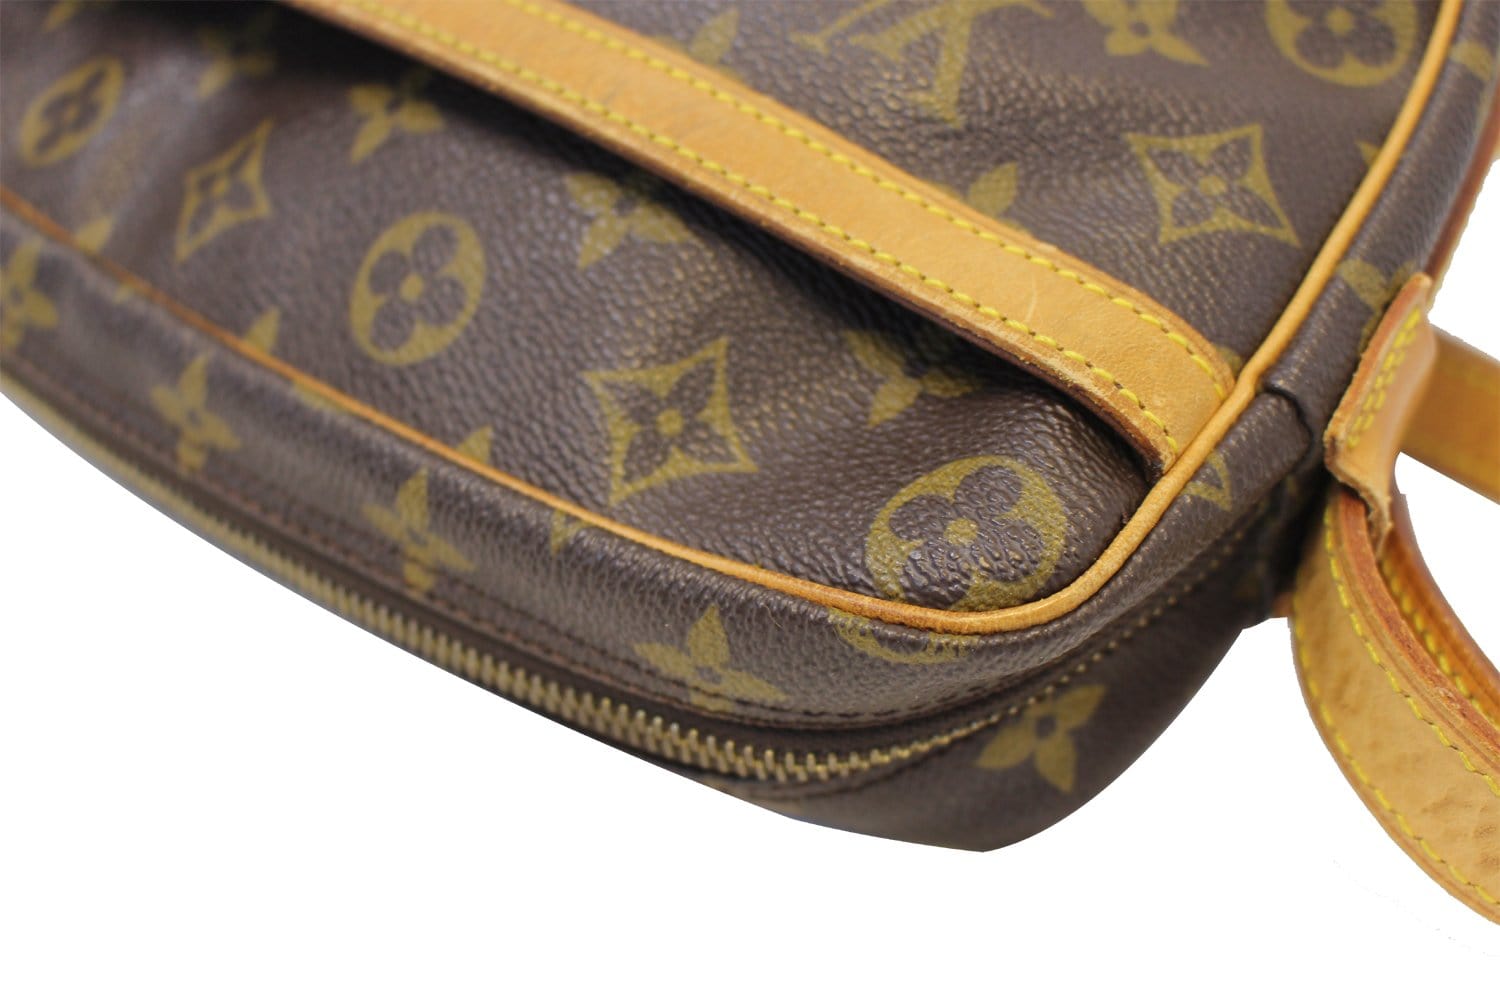 Louis Vuitton Jeune Fille Shoulder bag 380554